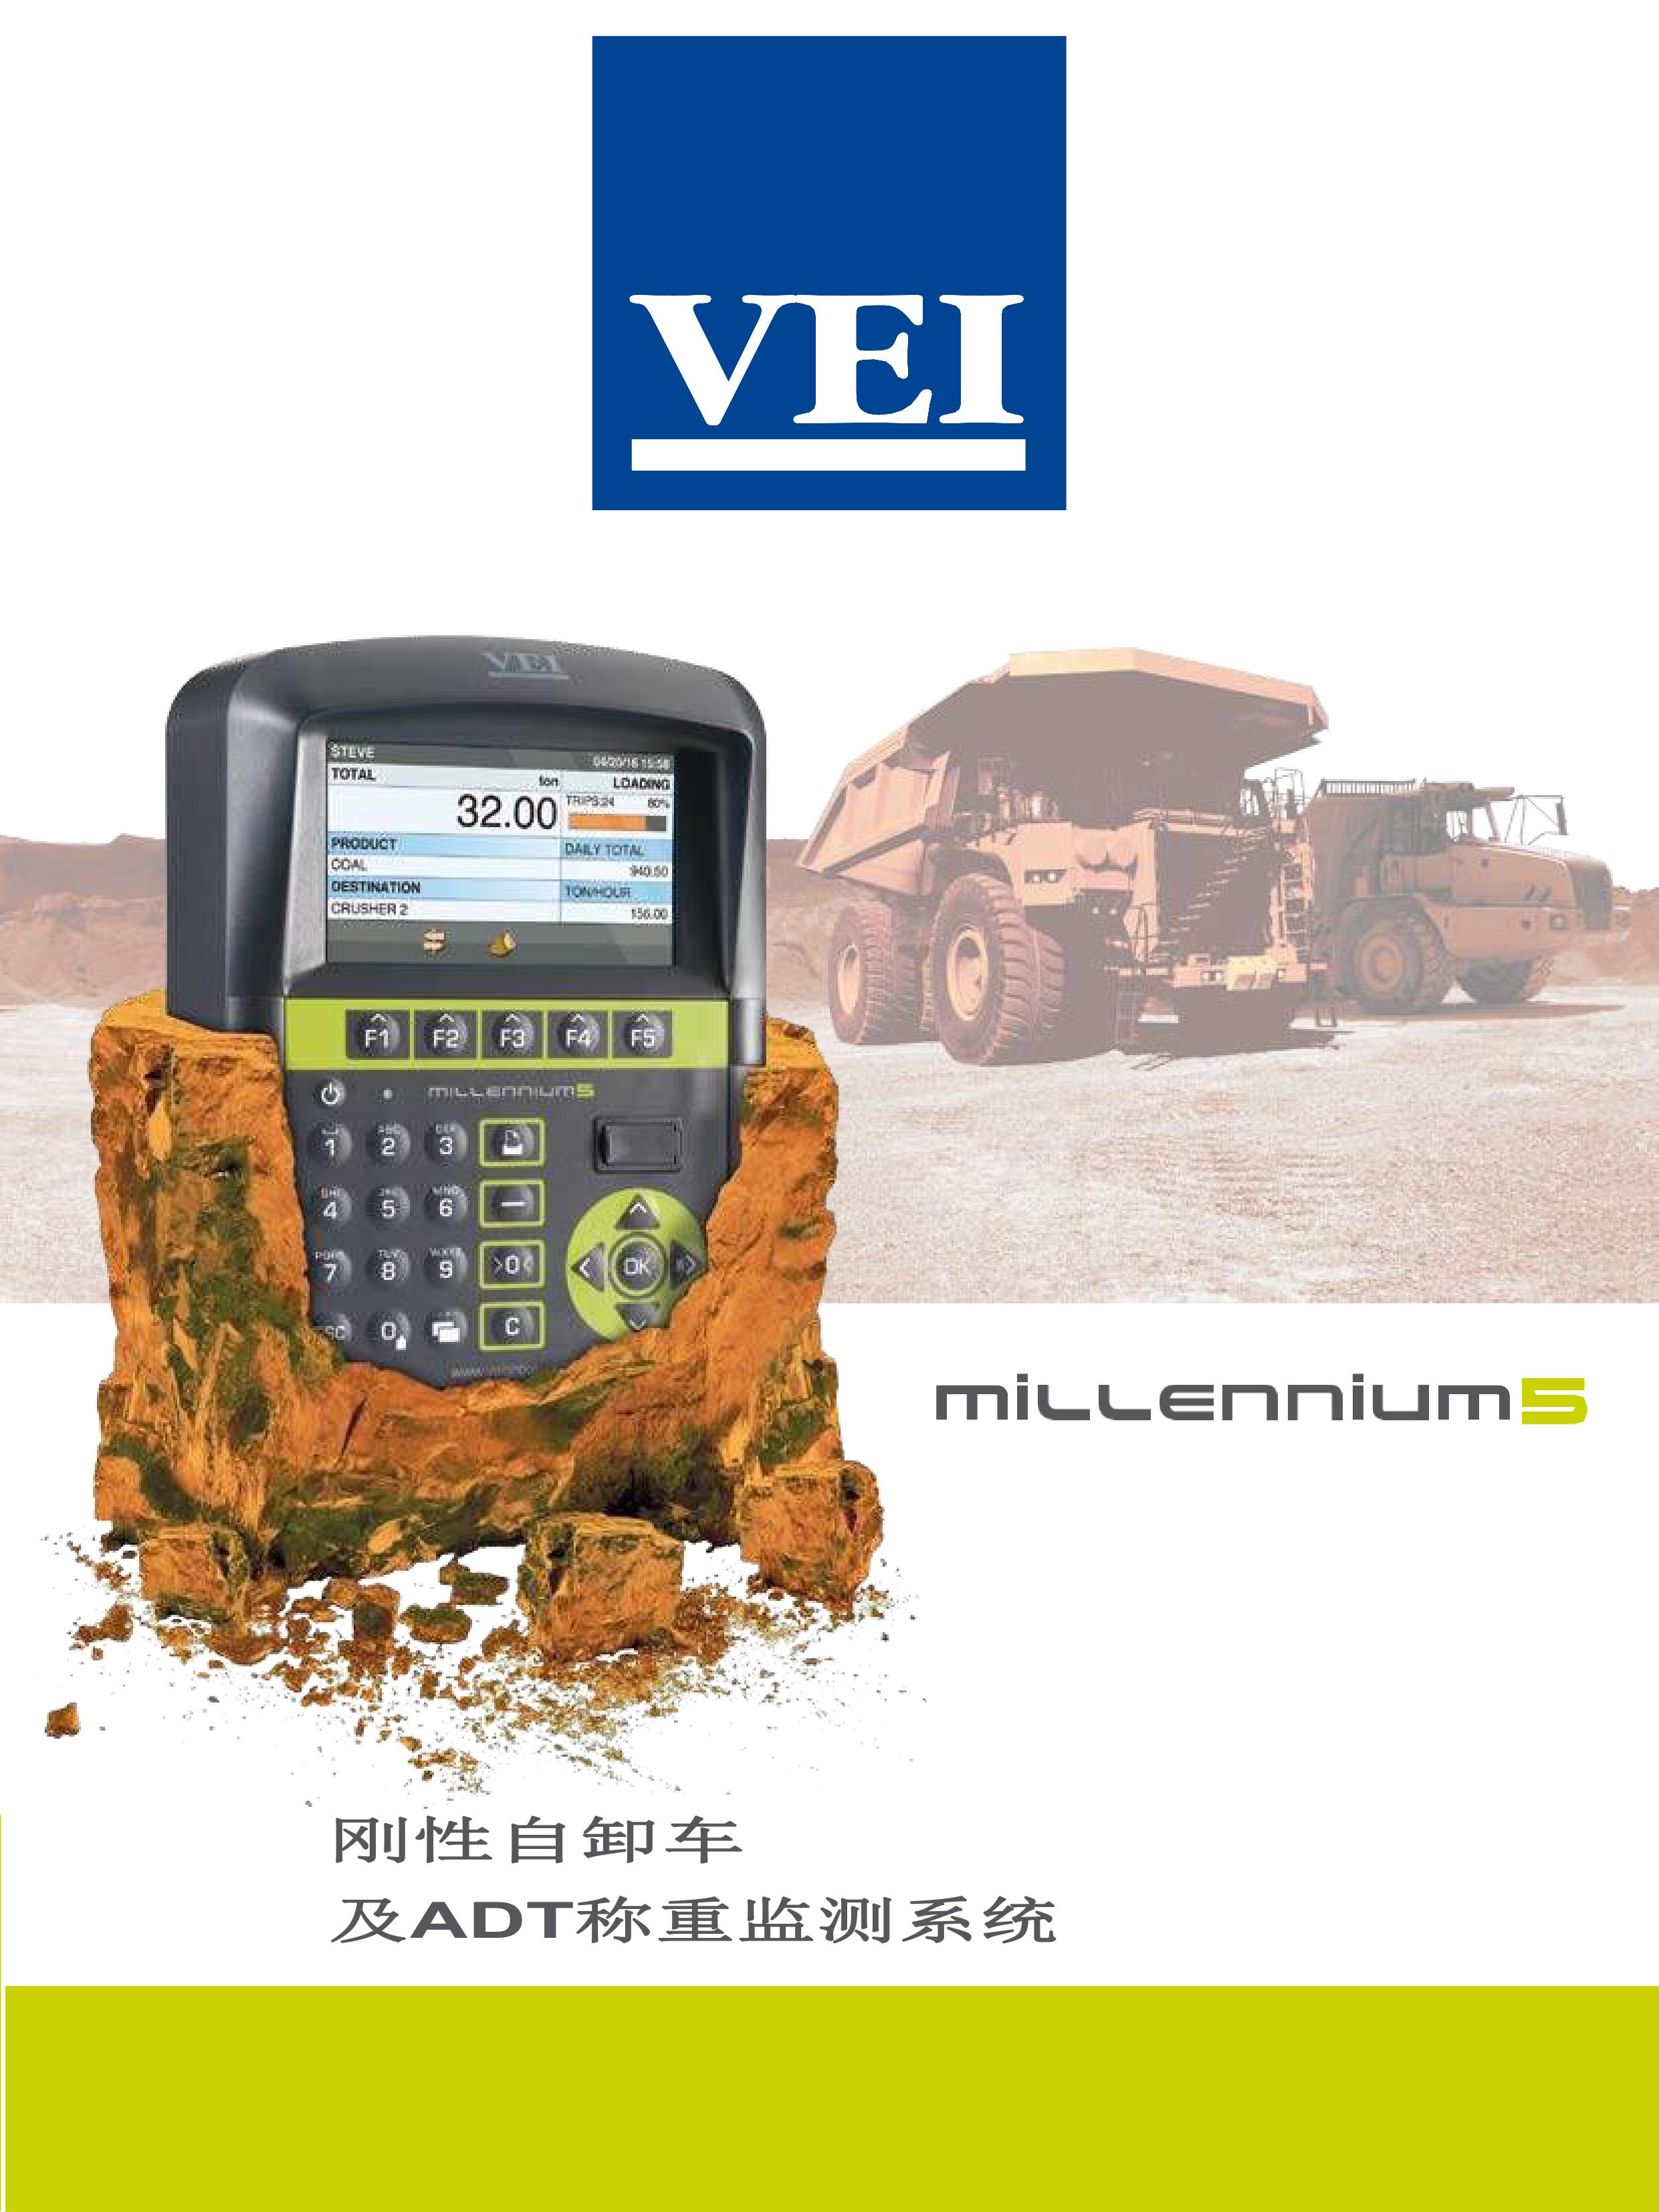 产品名称：自卸车称重系统
产品型号：MILLENNIUM5
产品规格：MILLENNIUM5